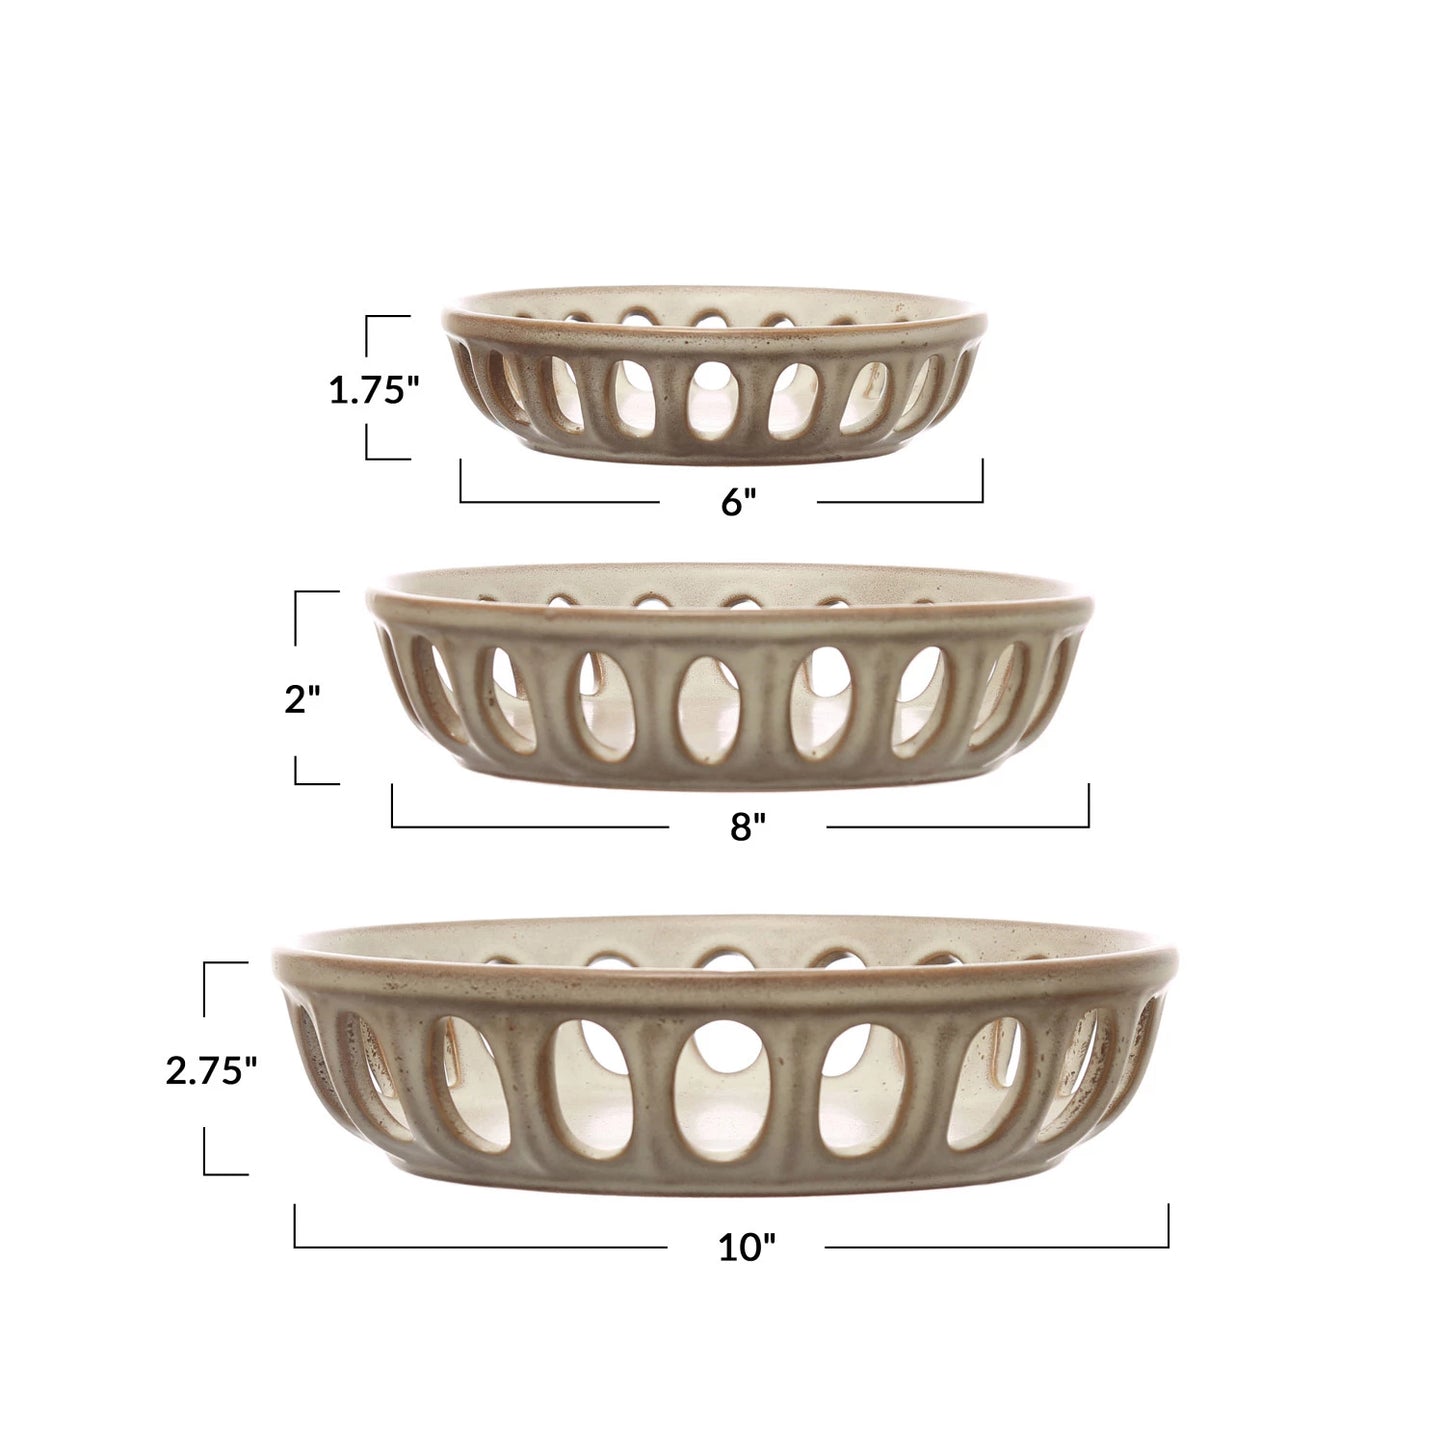 Stoneware Basket Bowl